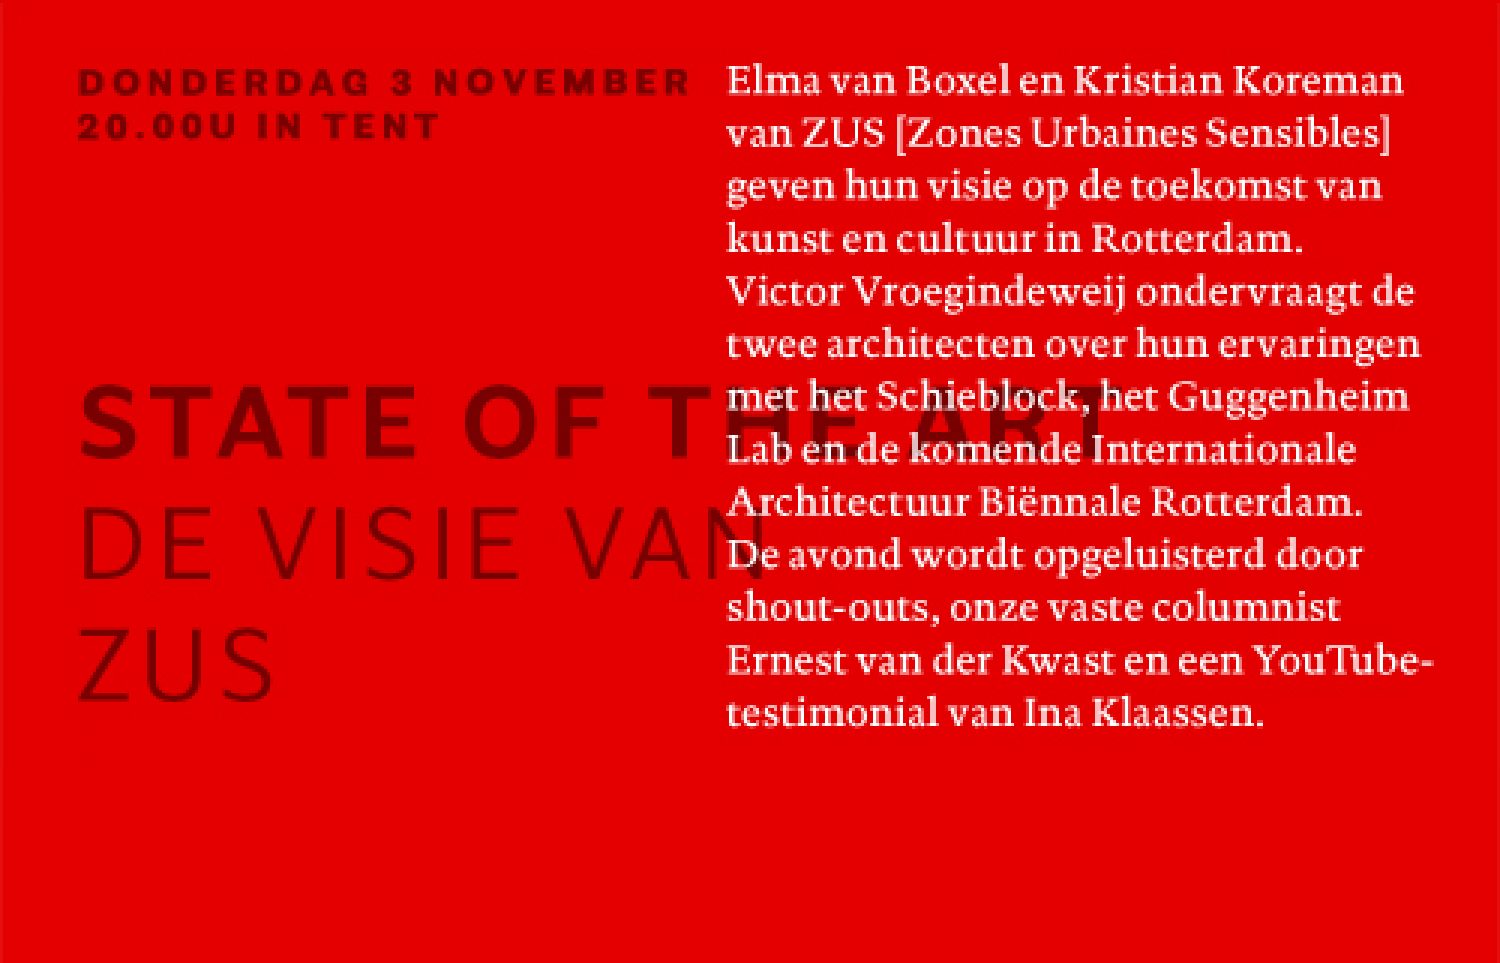 State of the Art, de visie van ZUS